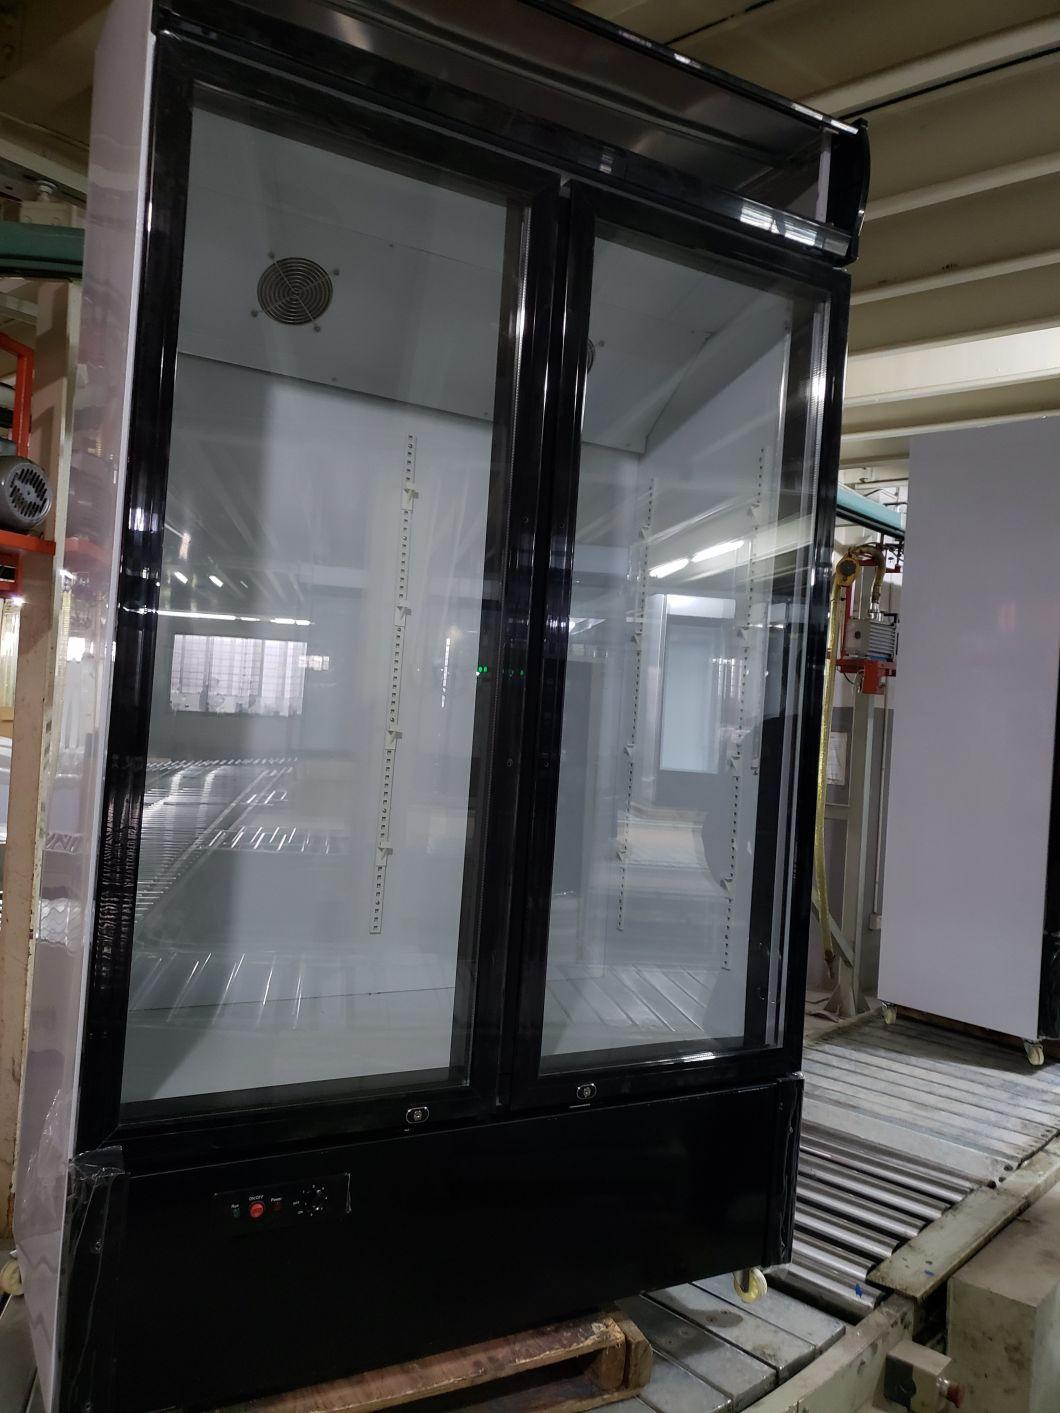 Low Price Vertical Beverge Refrigerator Single Glass Door Display Freezer Showcase Cooler